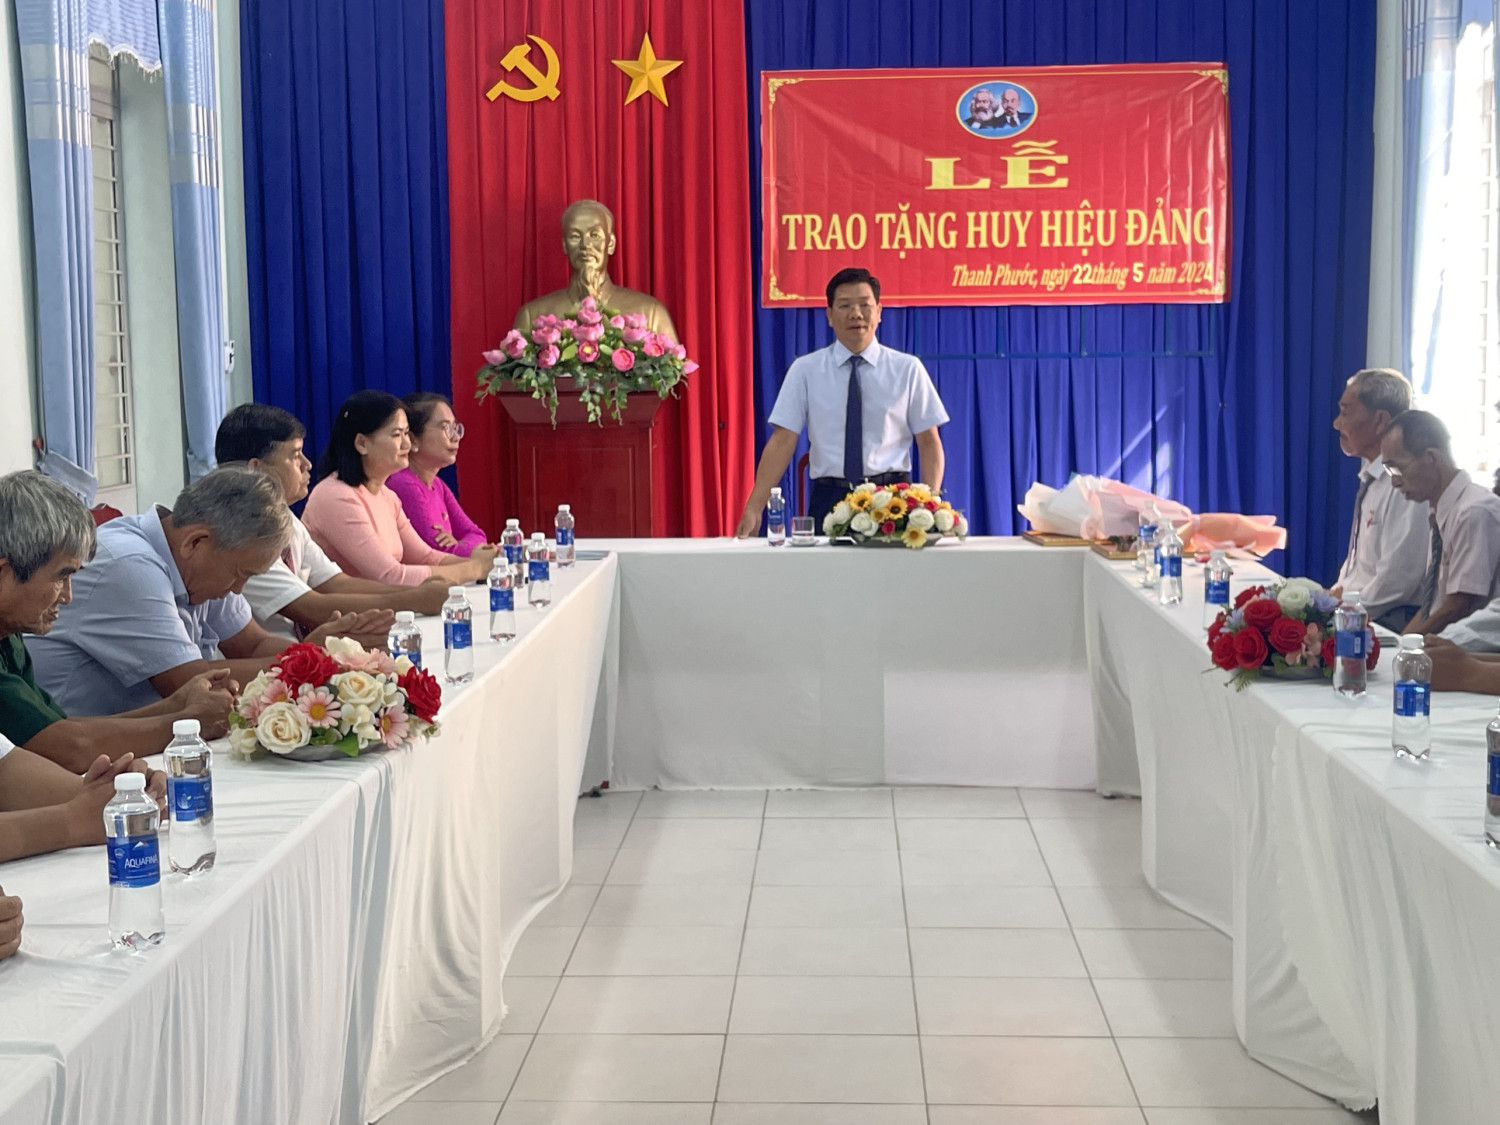 Phó Bí thư Tỉnh uỷ Nguyễn Mạnh Hùng trao Huy hiệu Đảng cho hai đảng viên Huỳnh Văn Huỵnh và Nguyễn Thành Thiện.